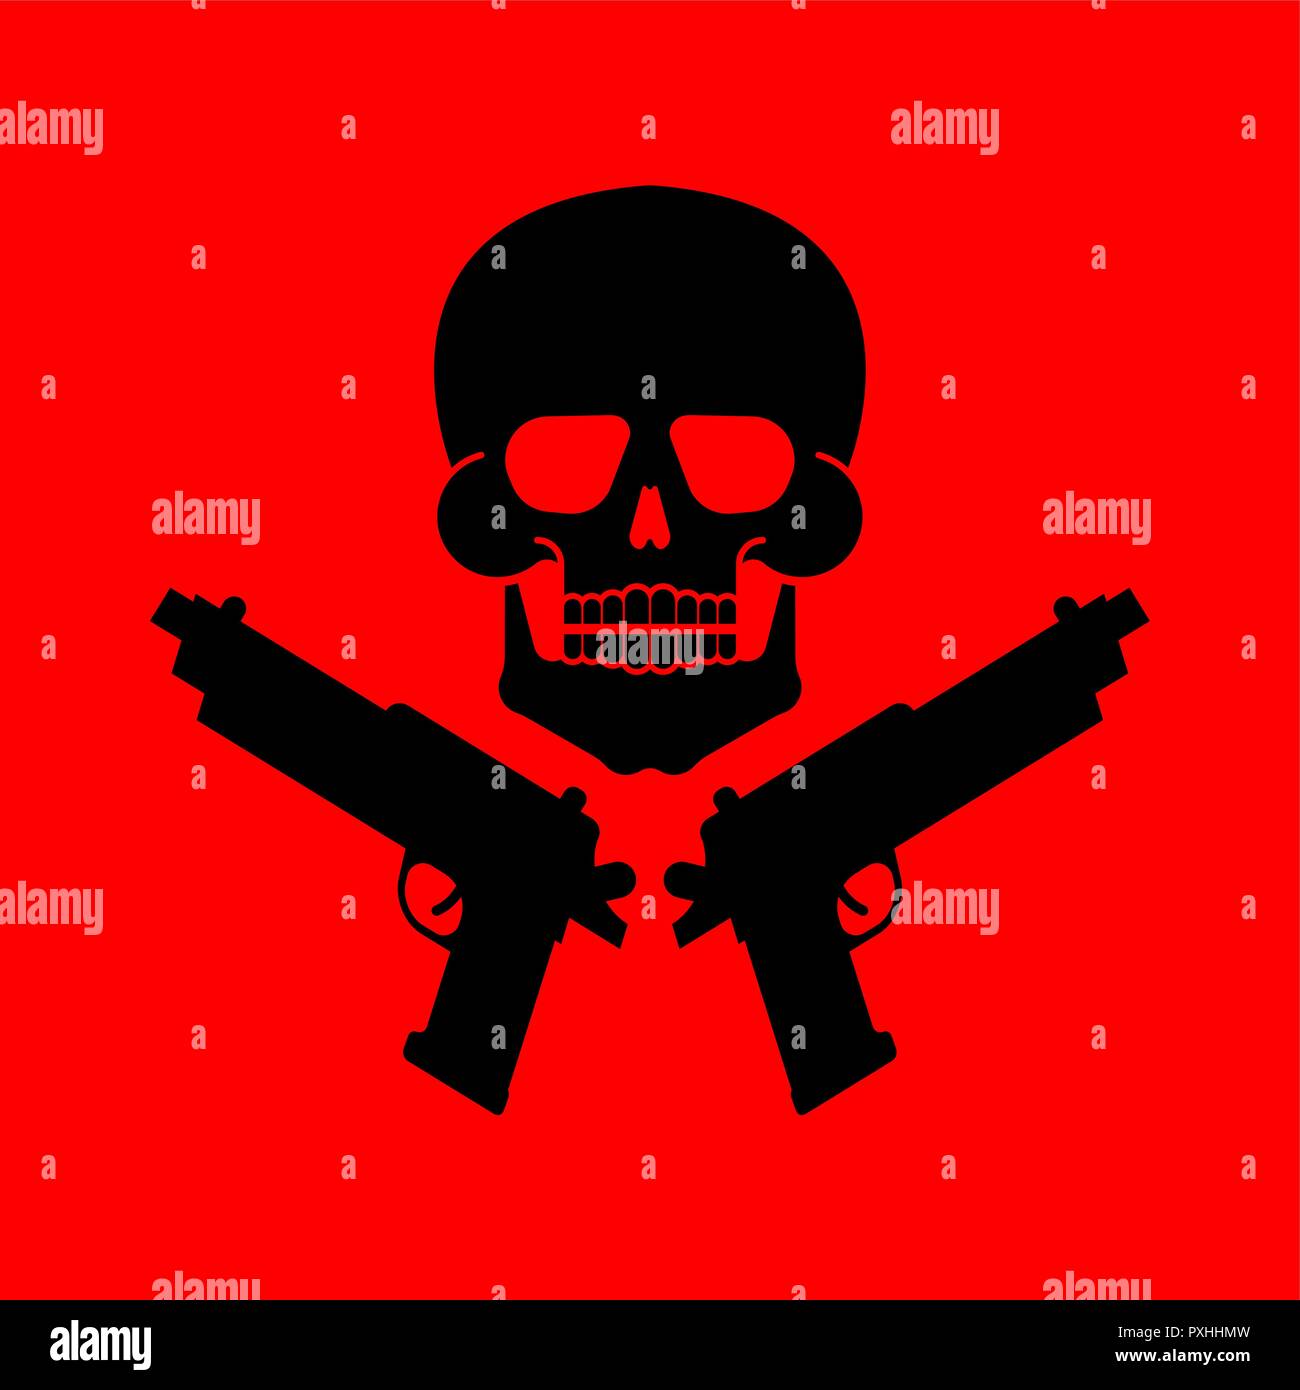 Skull and gun symbol. Army sign. Vector illustration Stock Vector